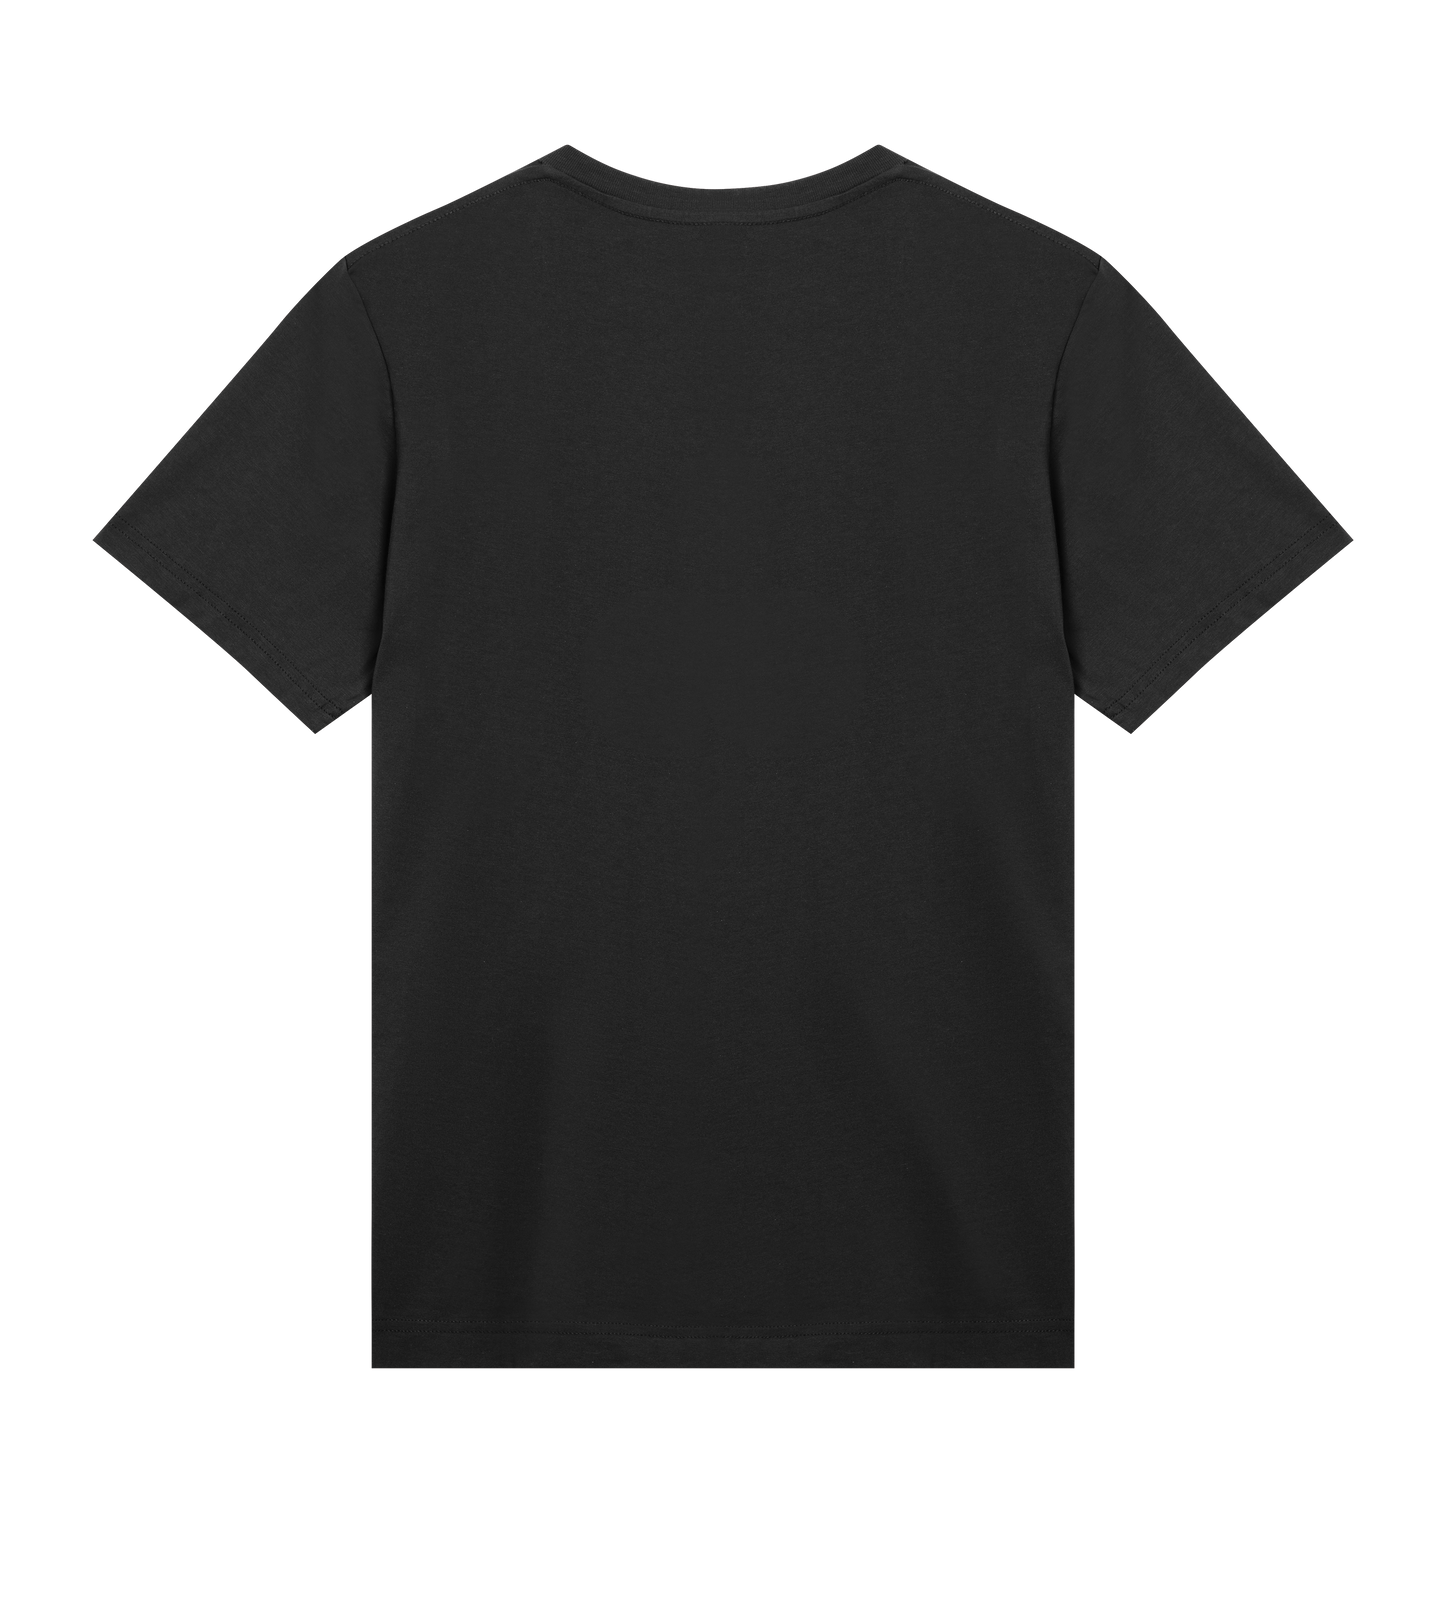 En Svensk Tiger Gbg Noir - Mens Regular T-shirt